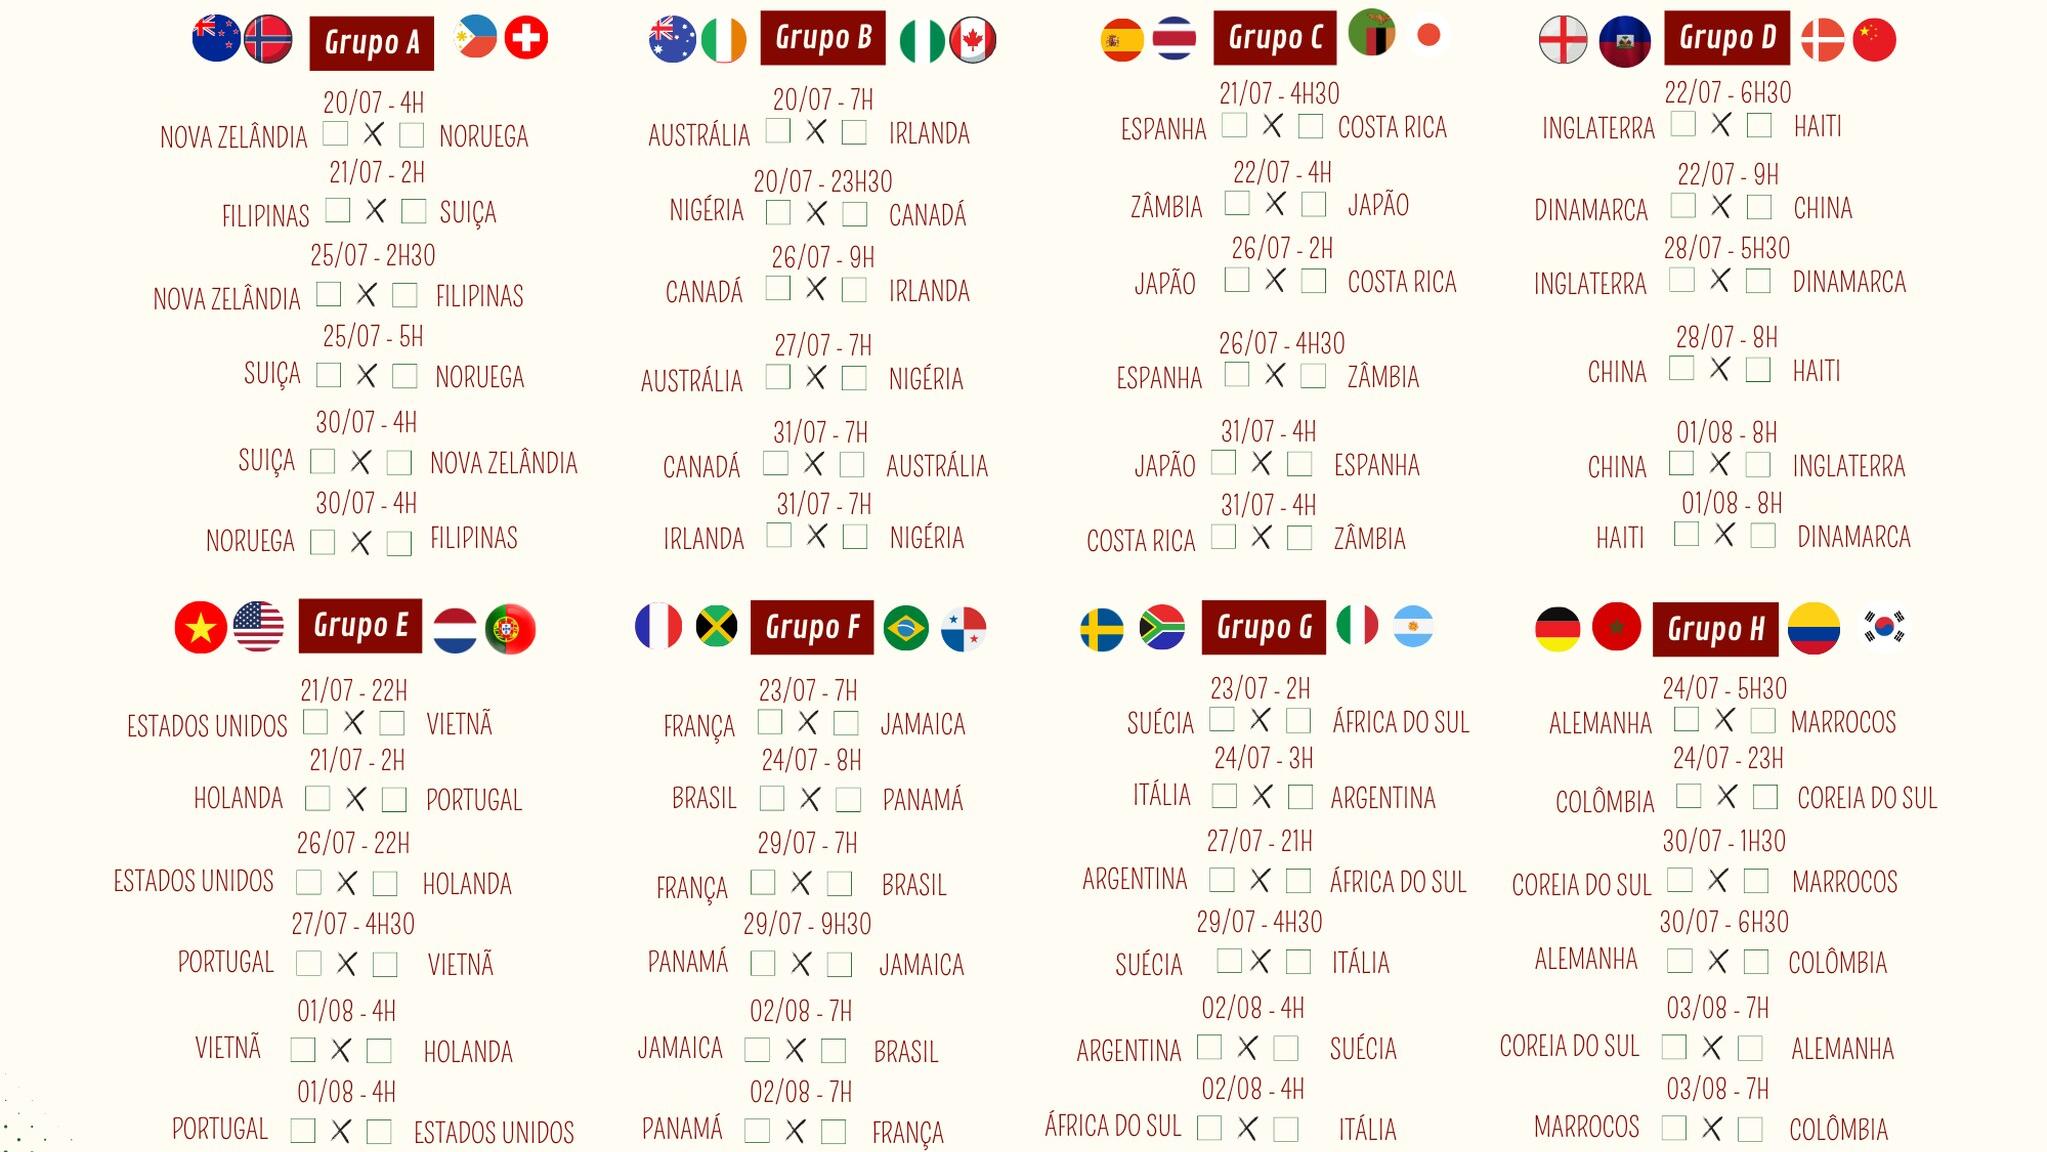 Baixe a tabela completa de jogos da Copa do Mundo feminina